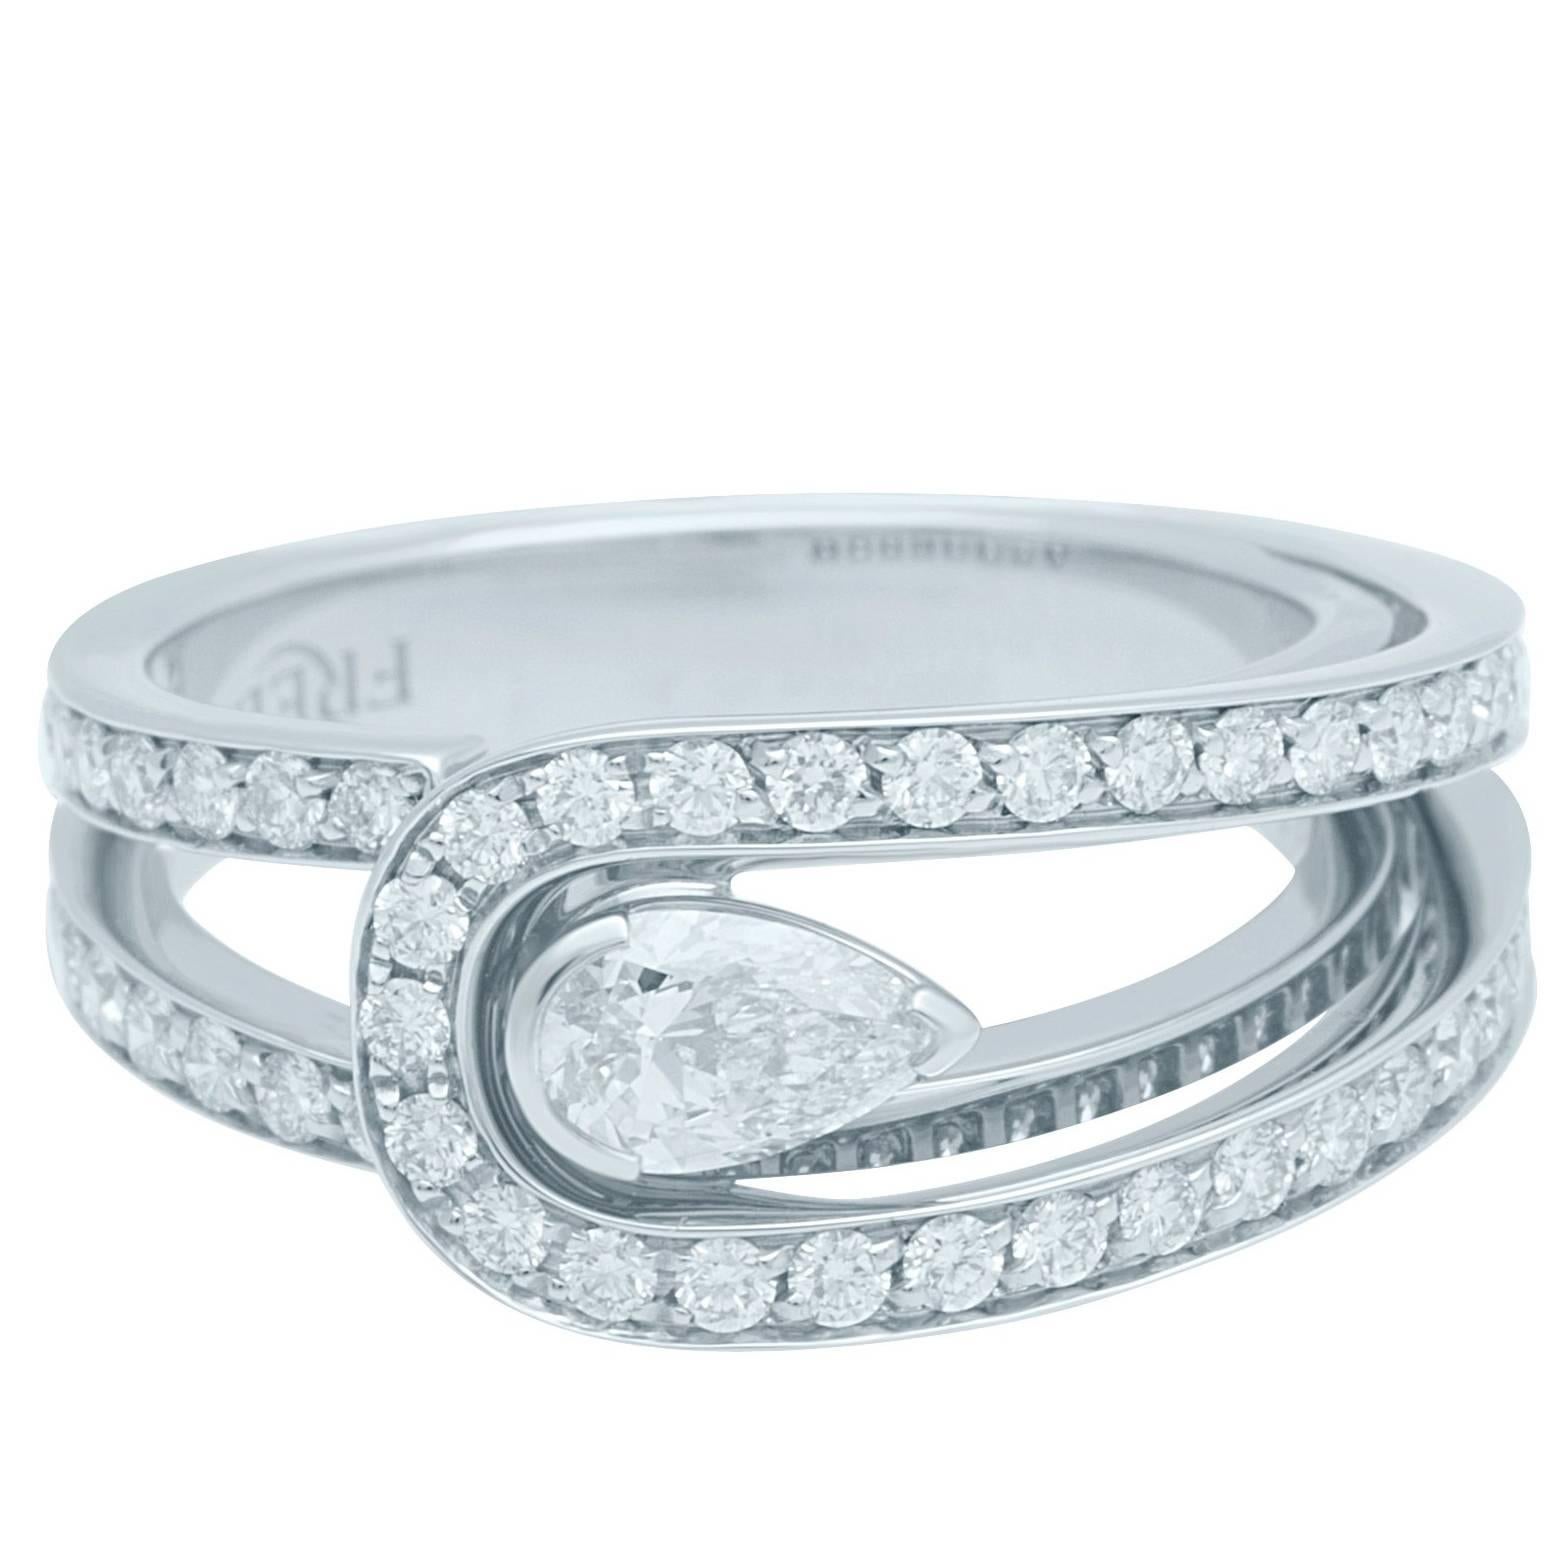 Fred Paris Diamond Platinum Ring For Sale